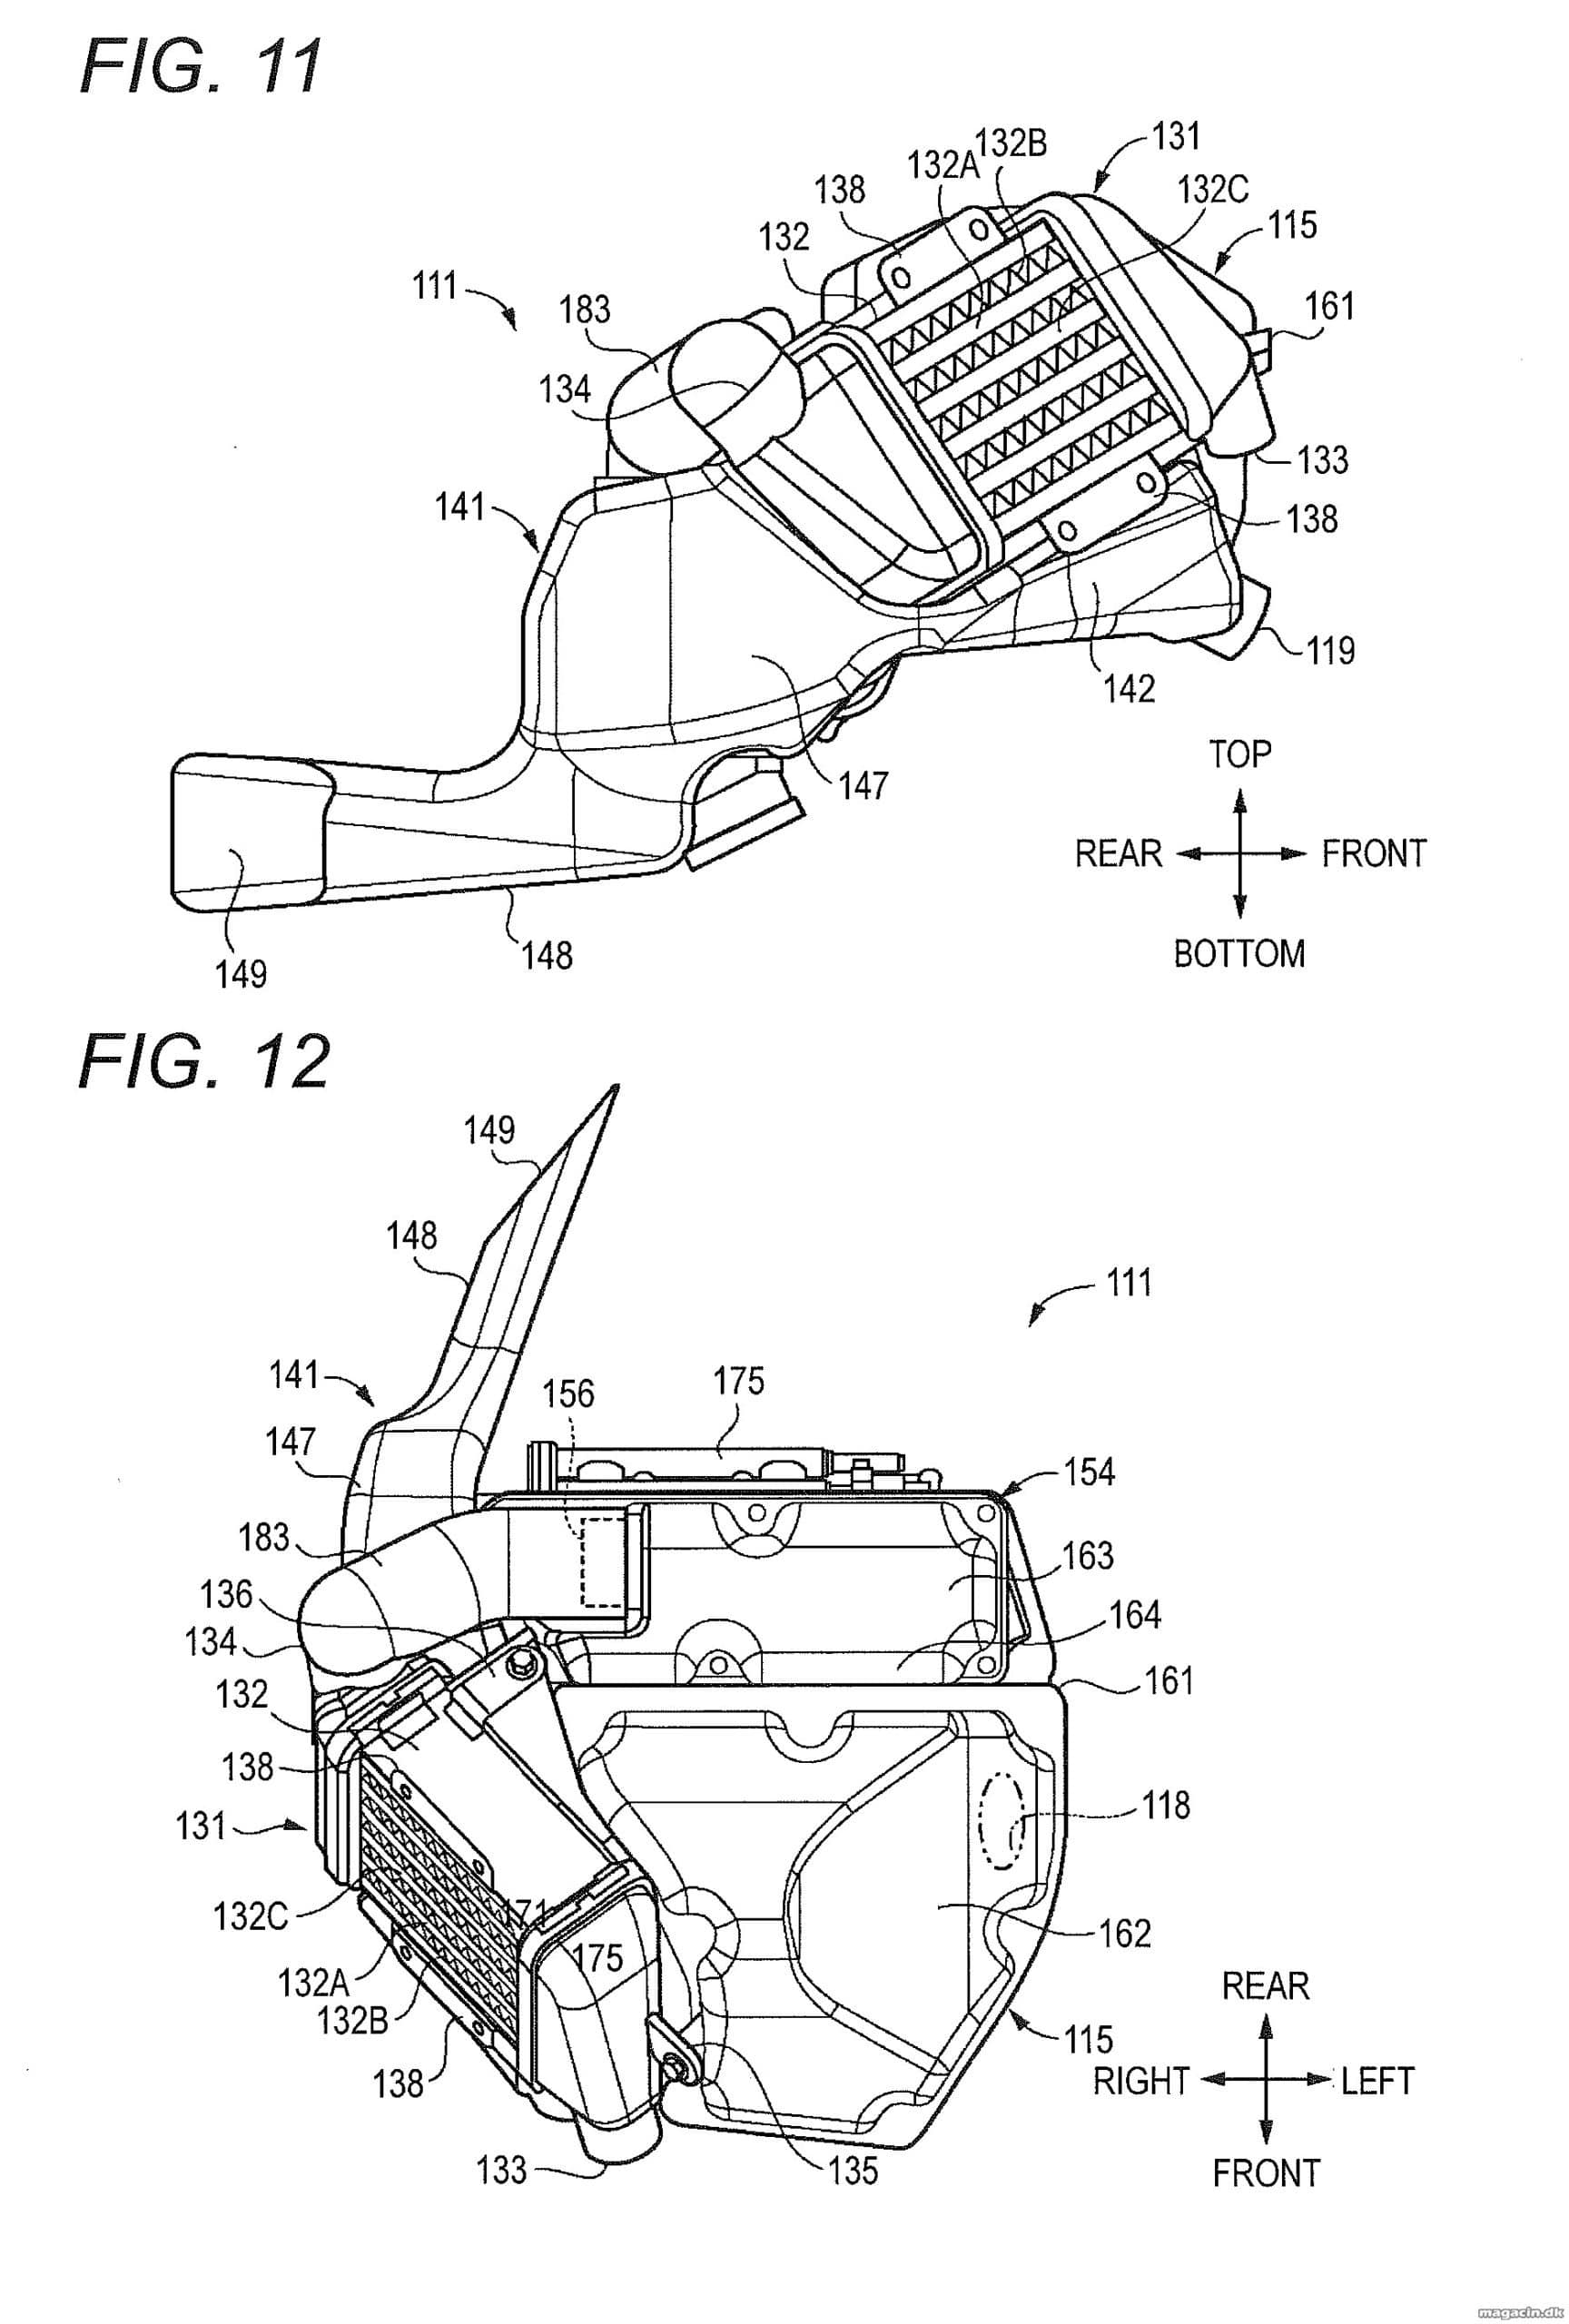 Nyt patent: hidsig Suzuki på vej